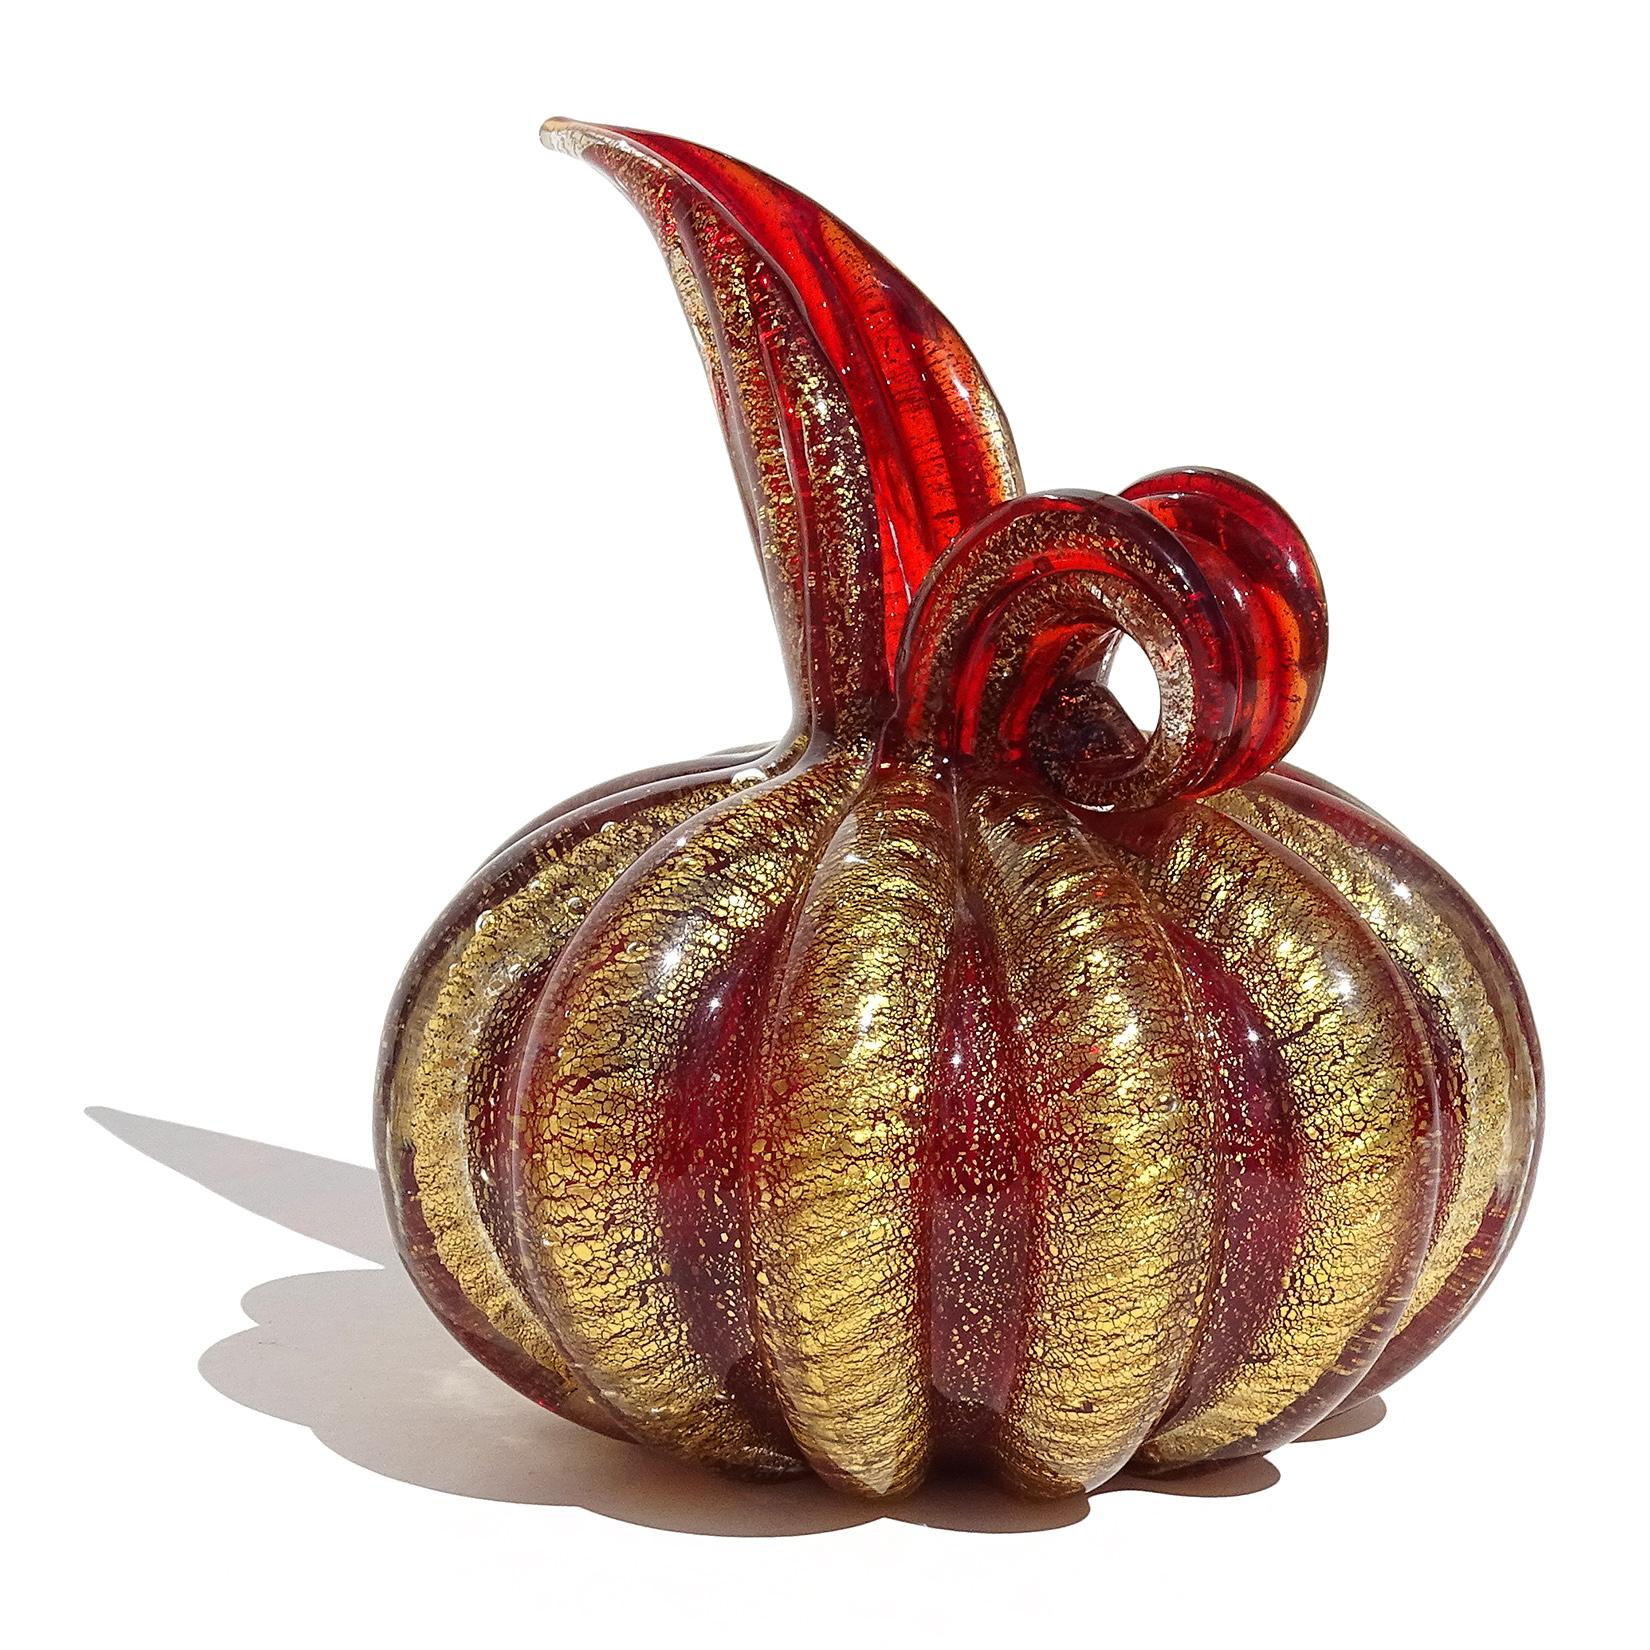 Schöne Vintage Murano mundgeblasen tief rot und Goldflecken italienischen Kunstglas Krug förmigen Blumenvase. Dokumentiert für den Designer Ercole Barovier, für die Firma Barovier e Toso. Sie ist im Cordonato D' Oro-Design gestaltet, bei dem der